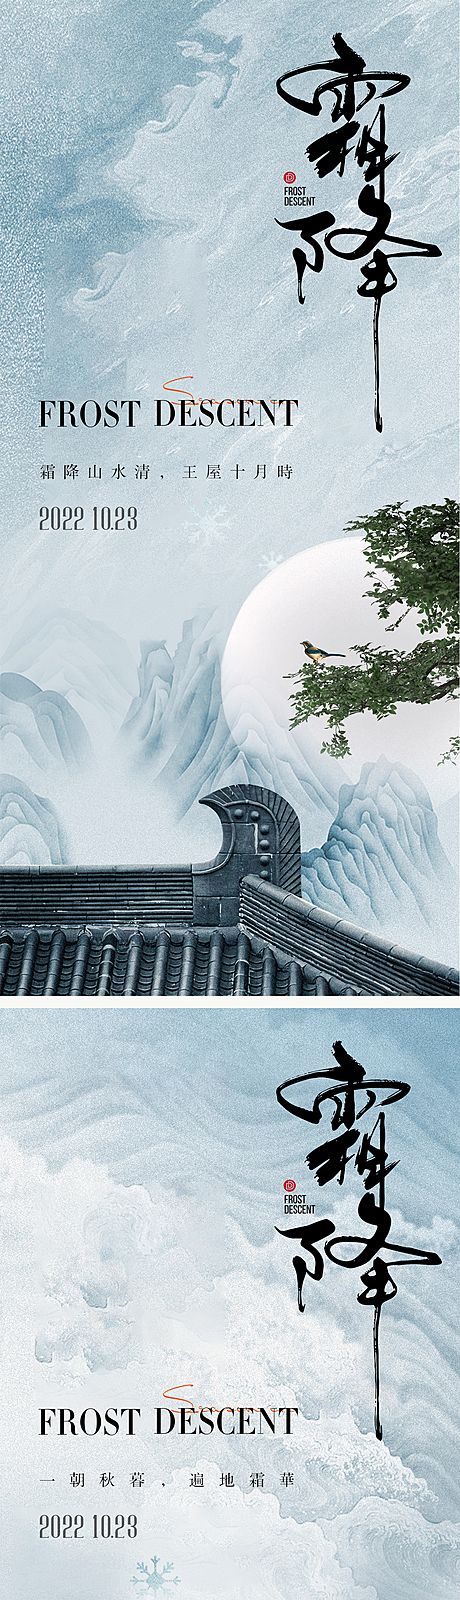 仙图网-霜降节气海报 